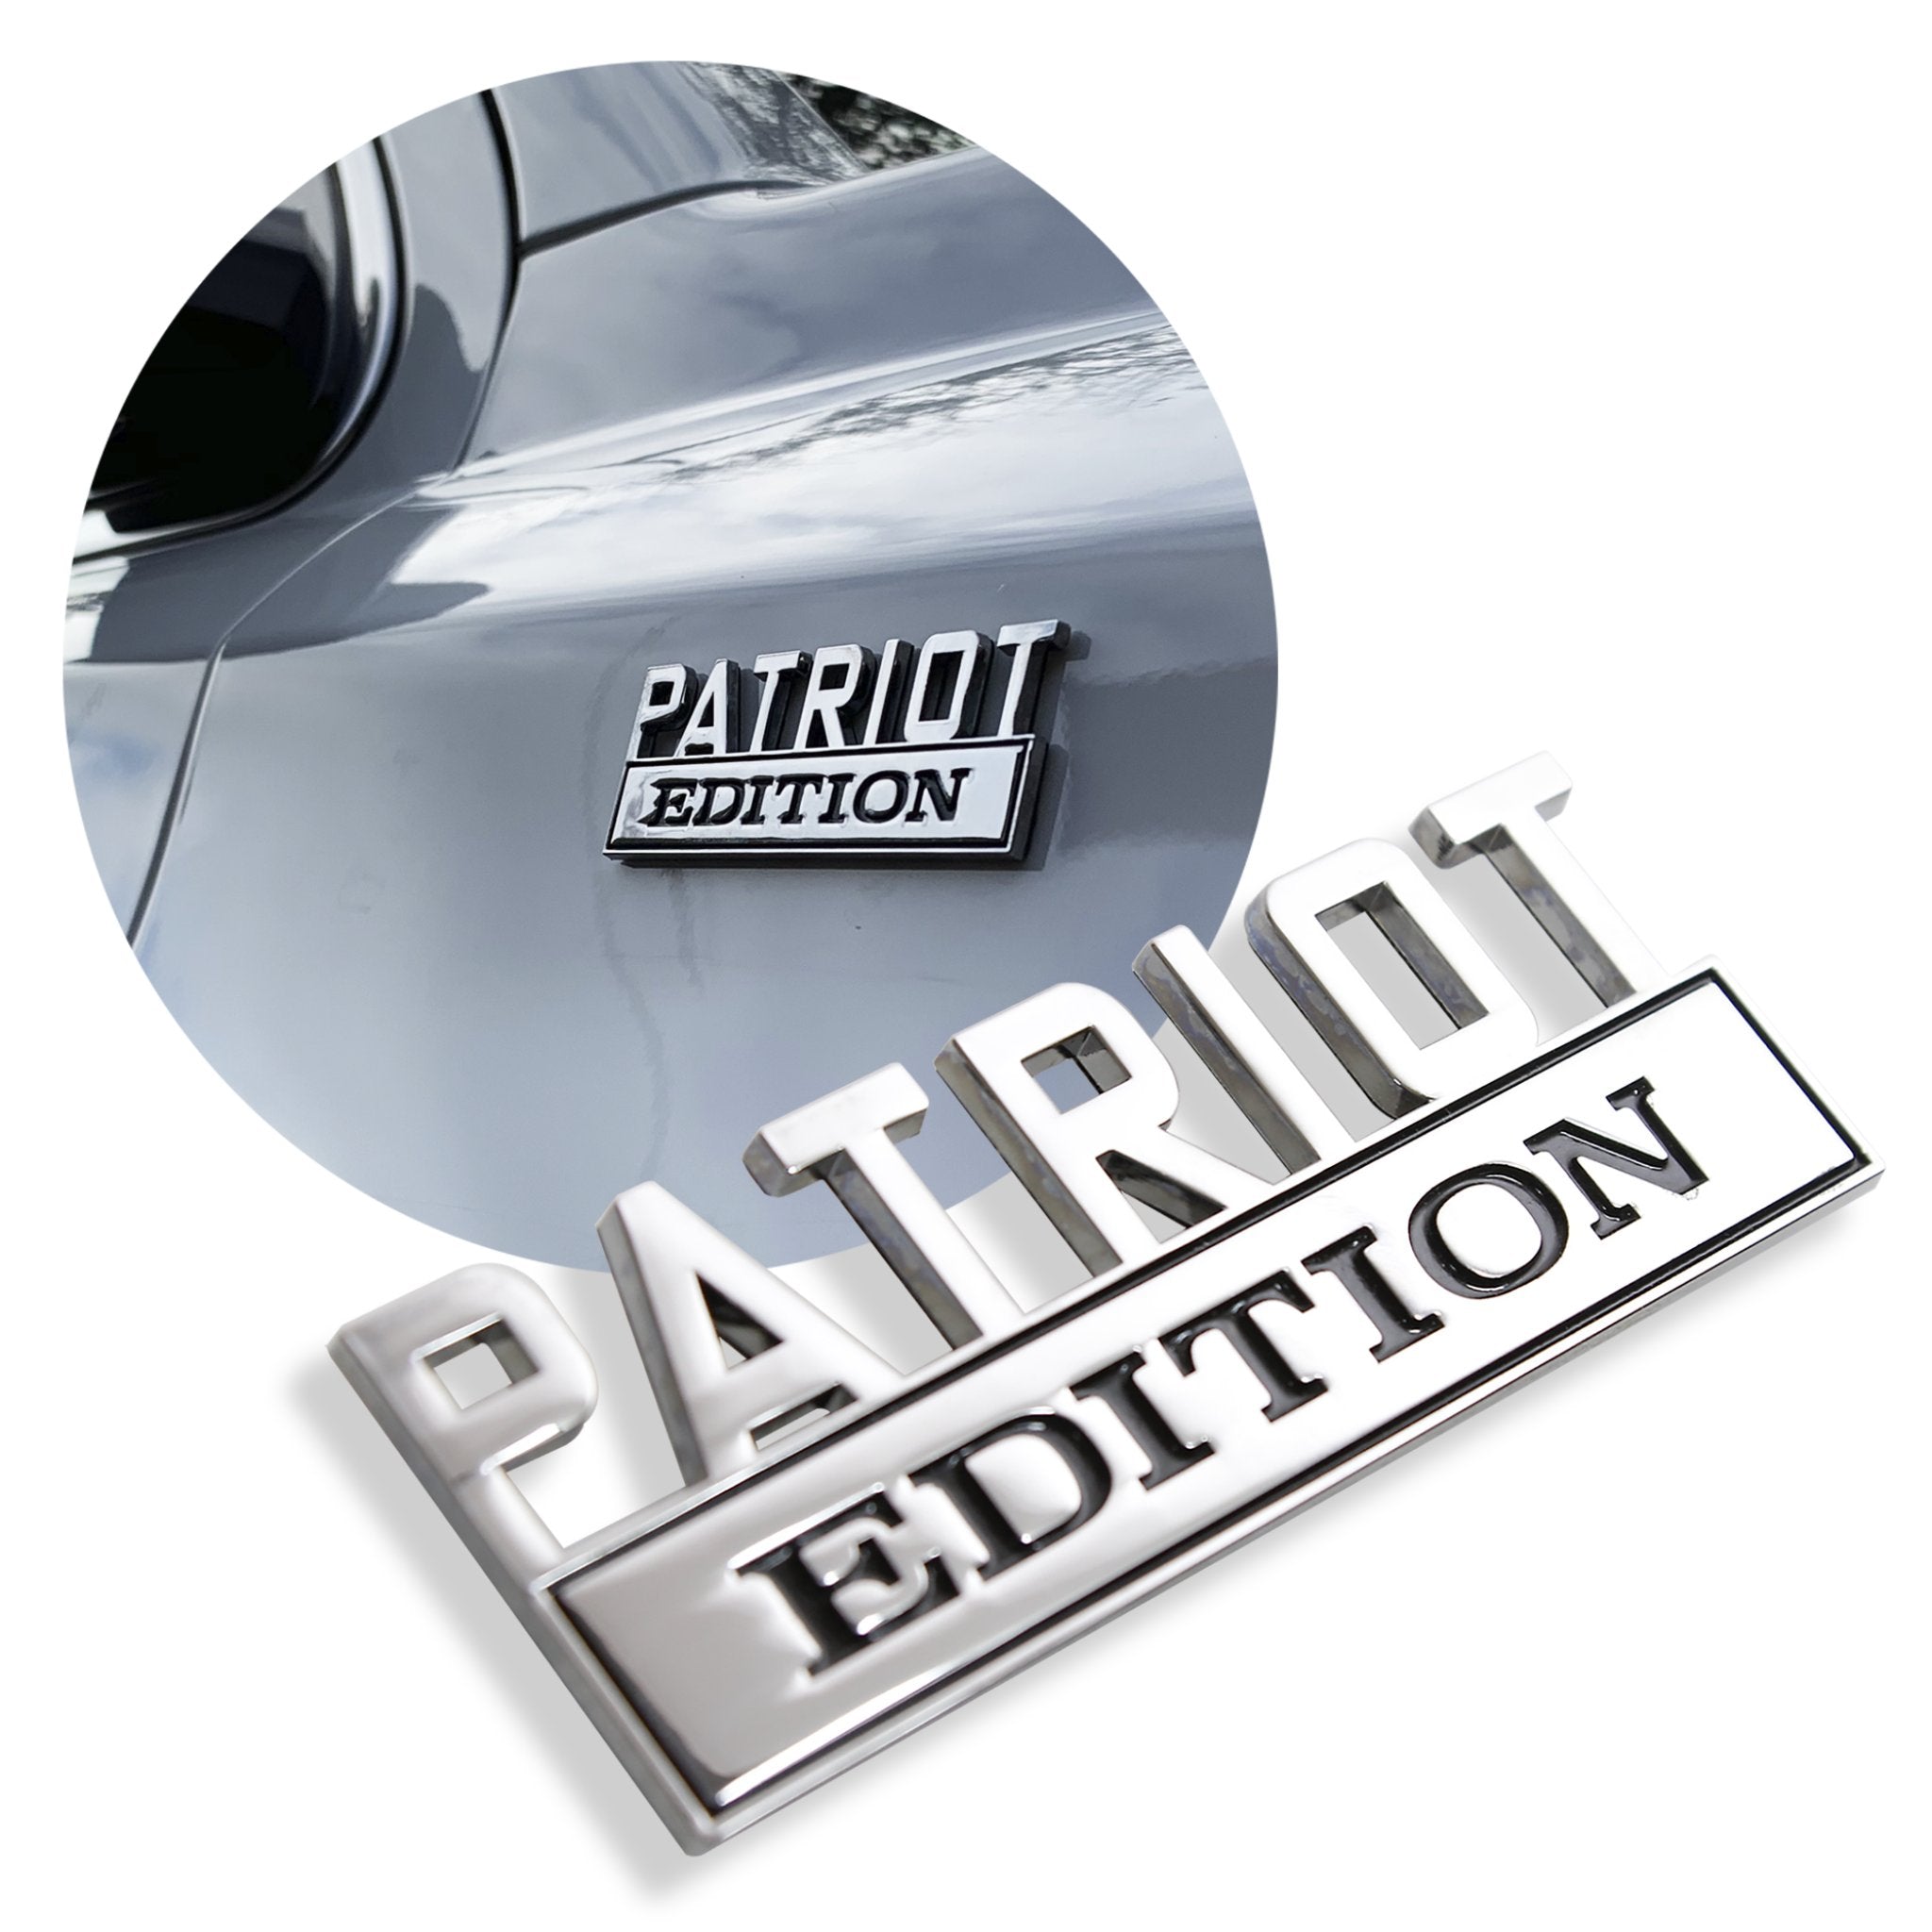 Emblema de guardabarros de Metal cromado, edición Patriot, insignia para coche, camión, portón trasero, maletero